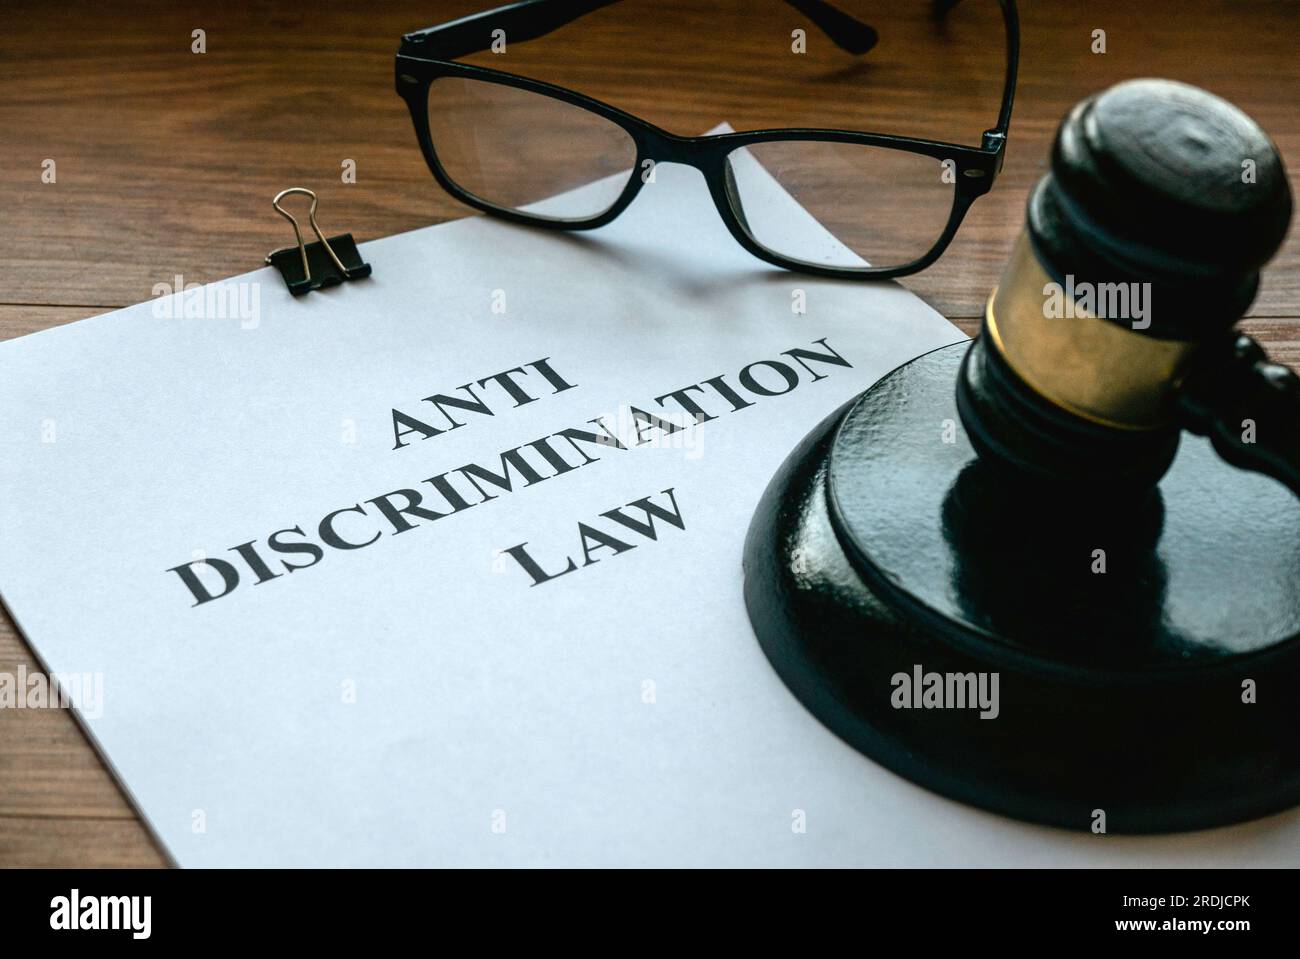 Legge contro la discriminazione. Concetto di uguaglianza e diritti umani.Procuratore giudiziario. Documento e martelletto su tavolo di legno. Foto Stock